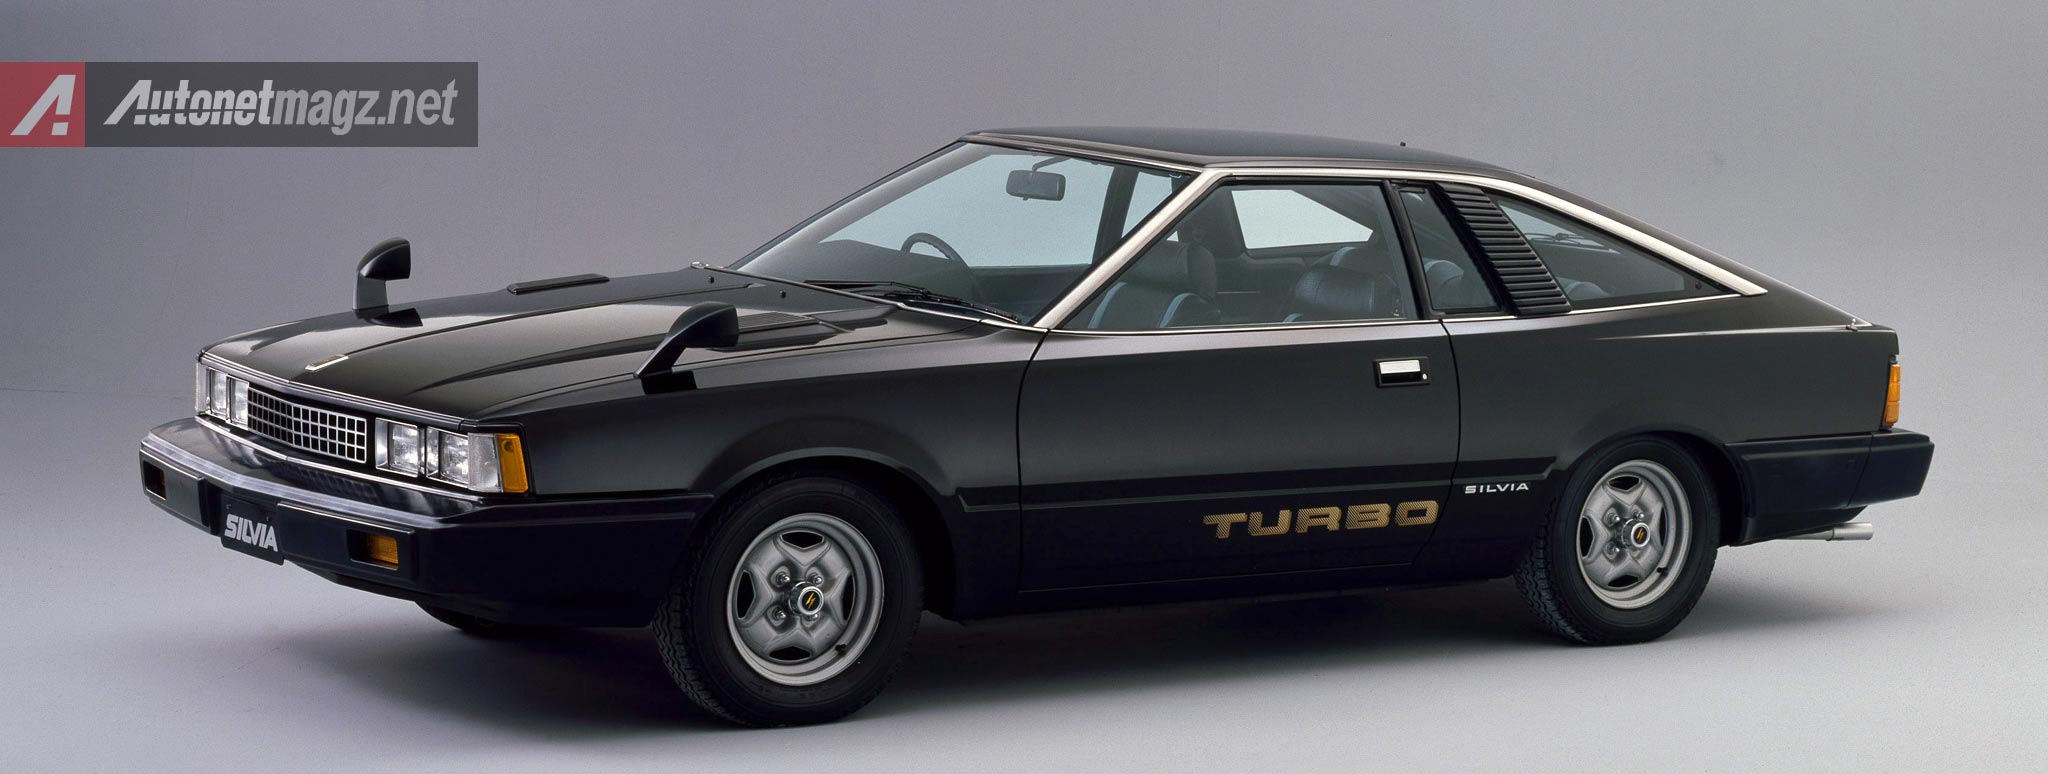 Berita, Nissan-Silvia-Turbo: Ini Dia Sejarah Nissan Silvia [Part 2]